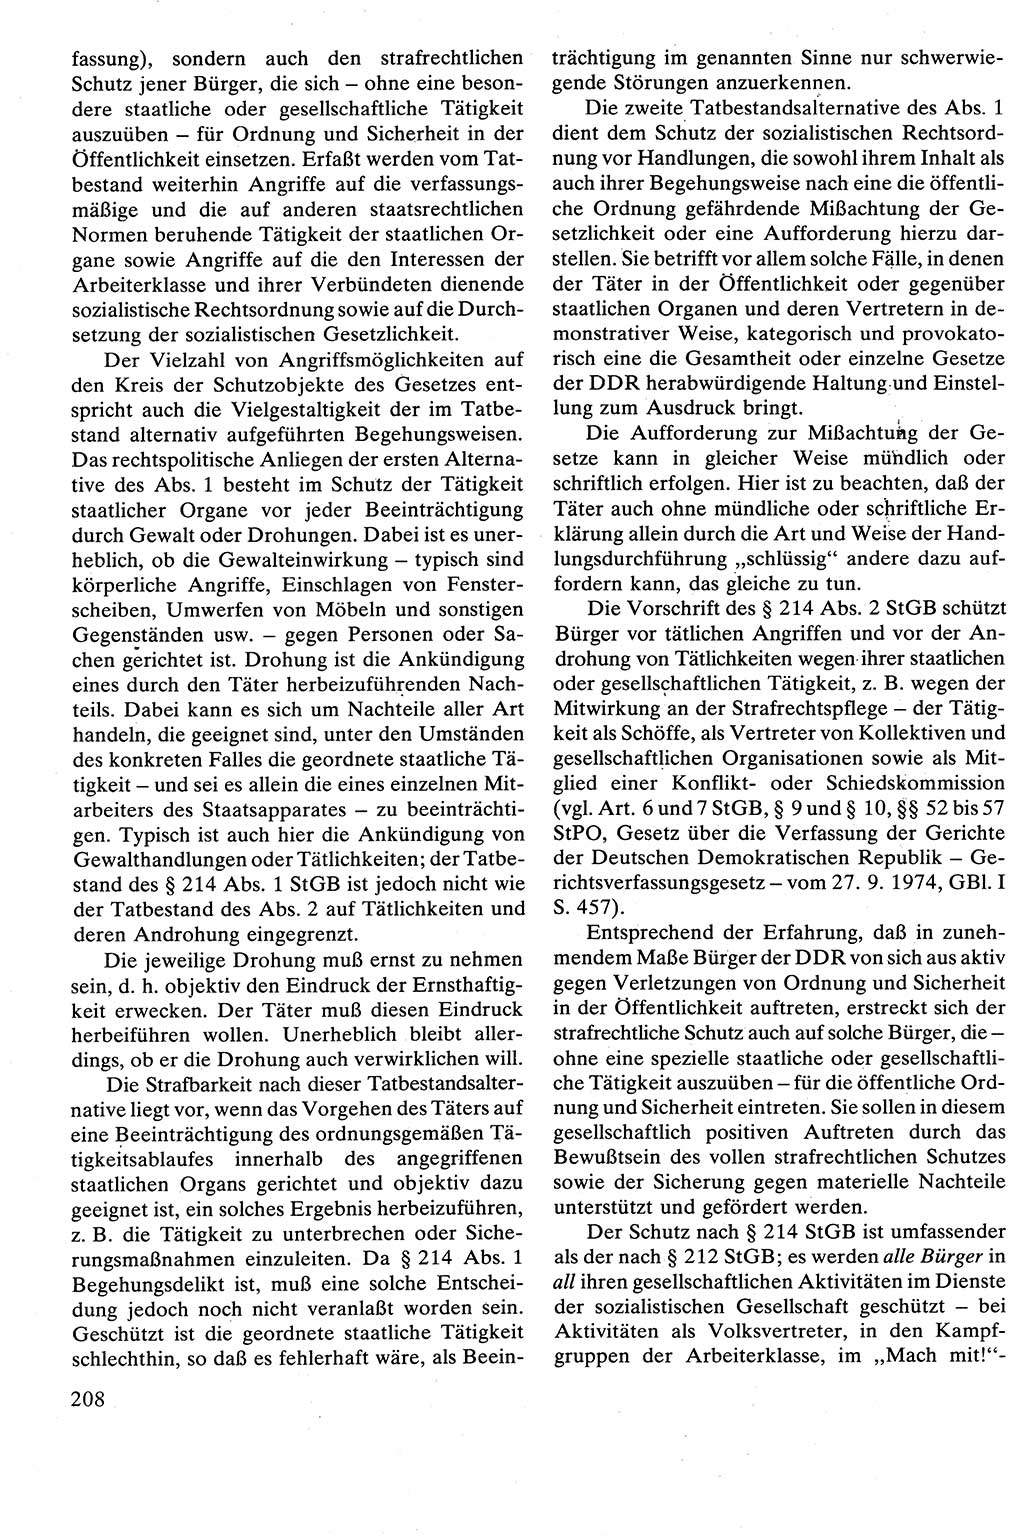 Strafrecht [Deutsche Demokratische Republik (DDR)], Besonderer Teil, Lehrbuch 1981, Seite 208 (Strafr. DDR BT Lb. 1981, S. 208)